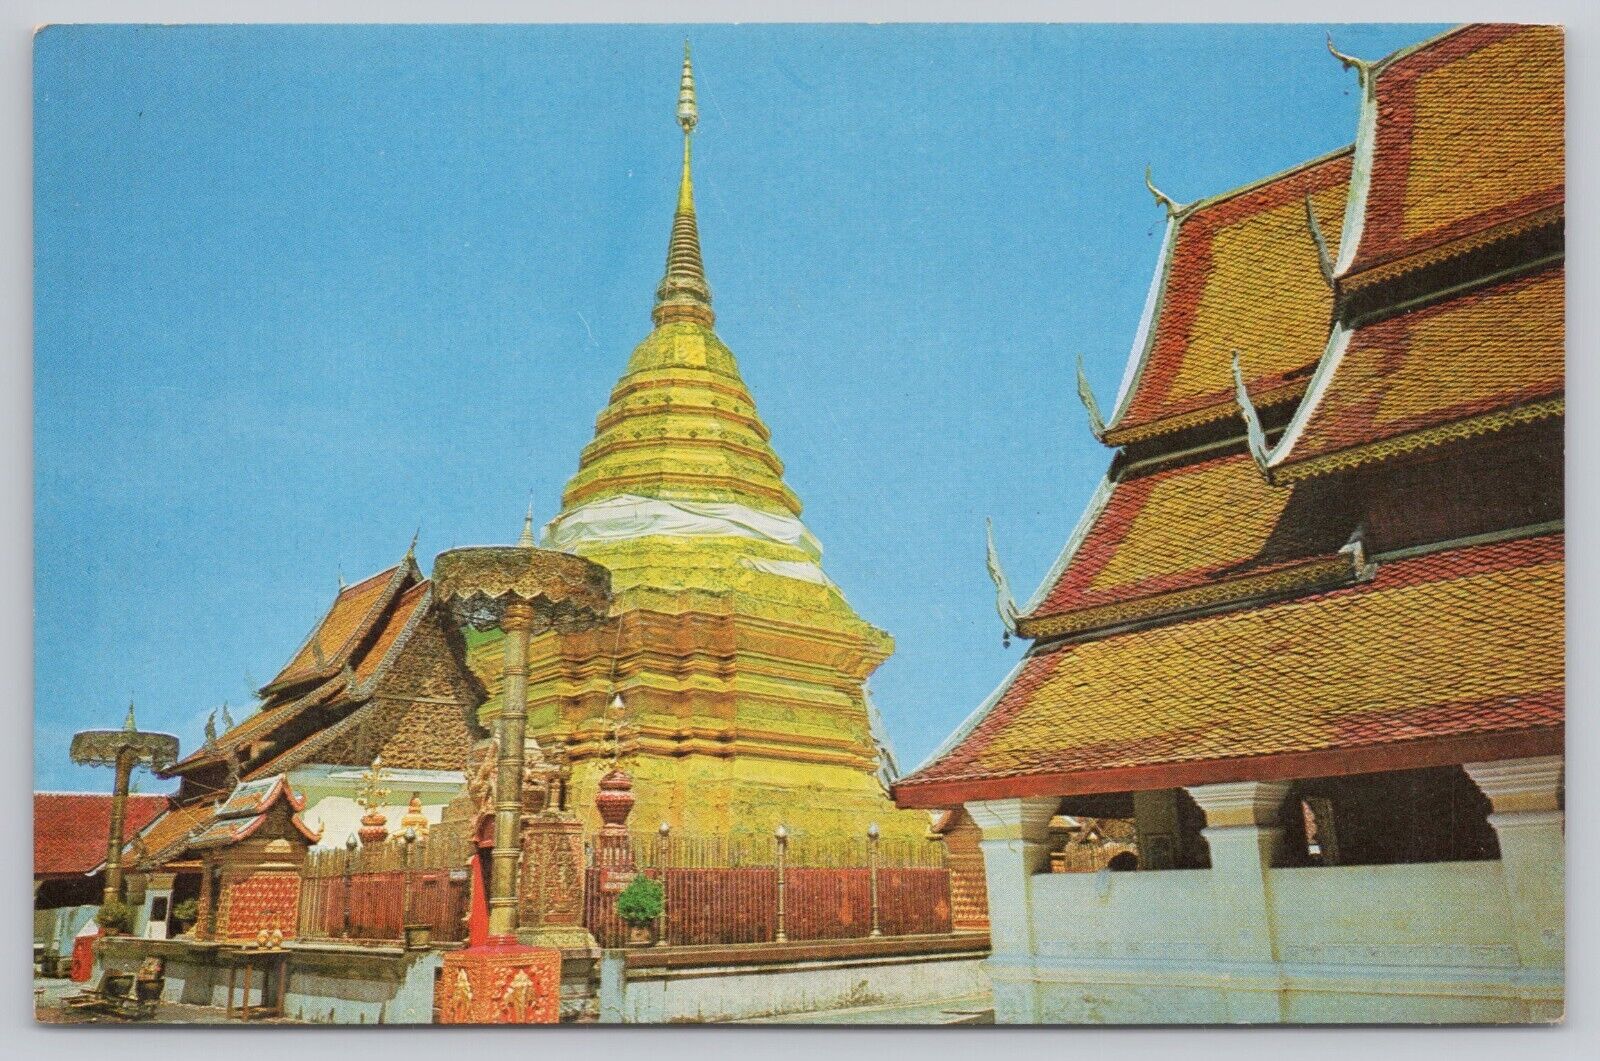 Chiengmai Thailand, Wad Phra That Doi Suthep, Vintage Postcard